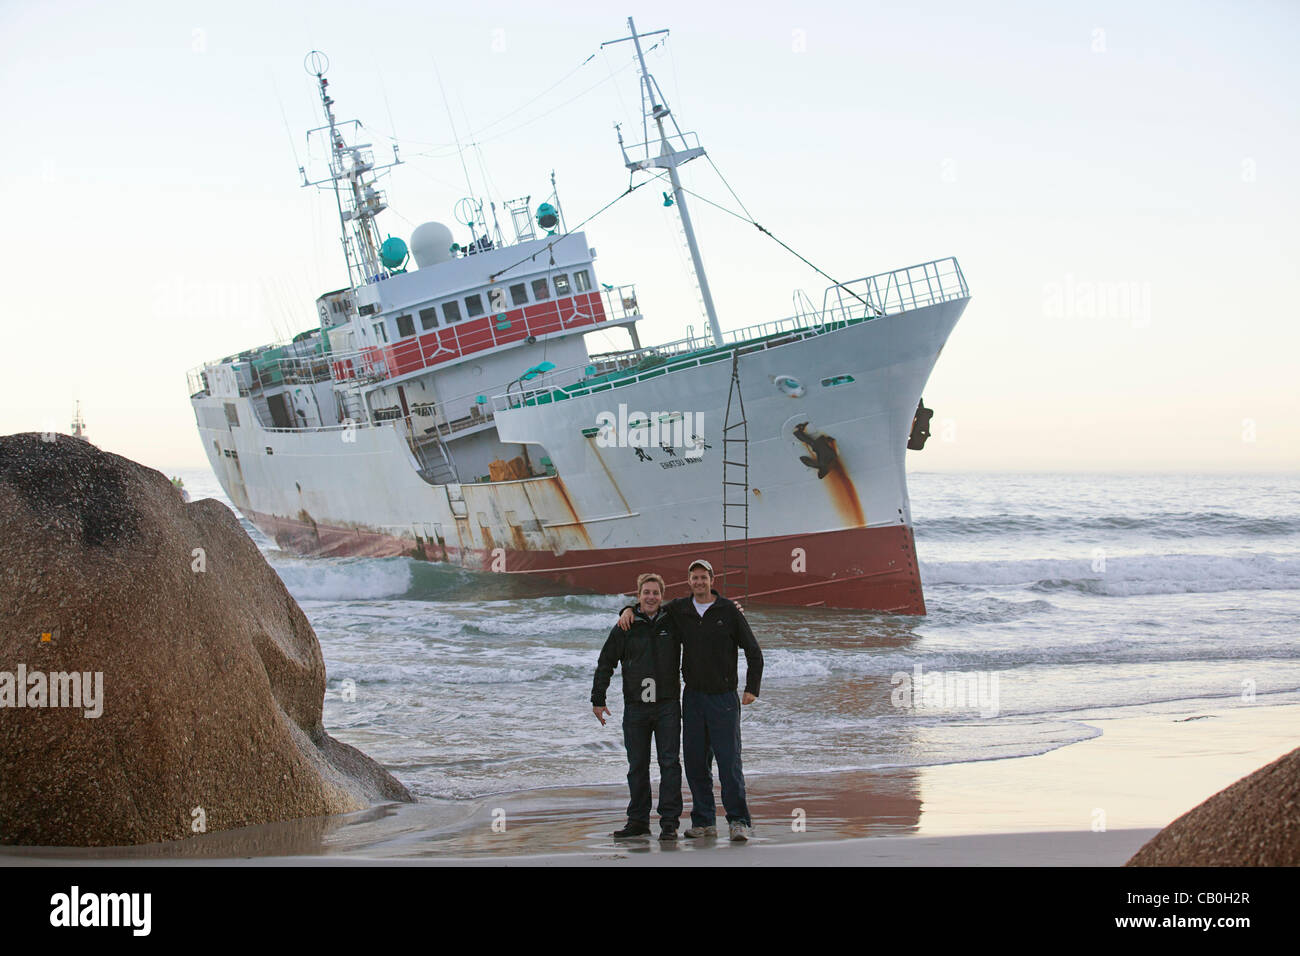 Bateau de pêche japonais frappé par Eihatsu "Maru" s'échoue à Clifton, Cape Town Banque D'Images